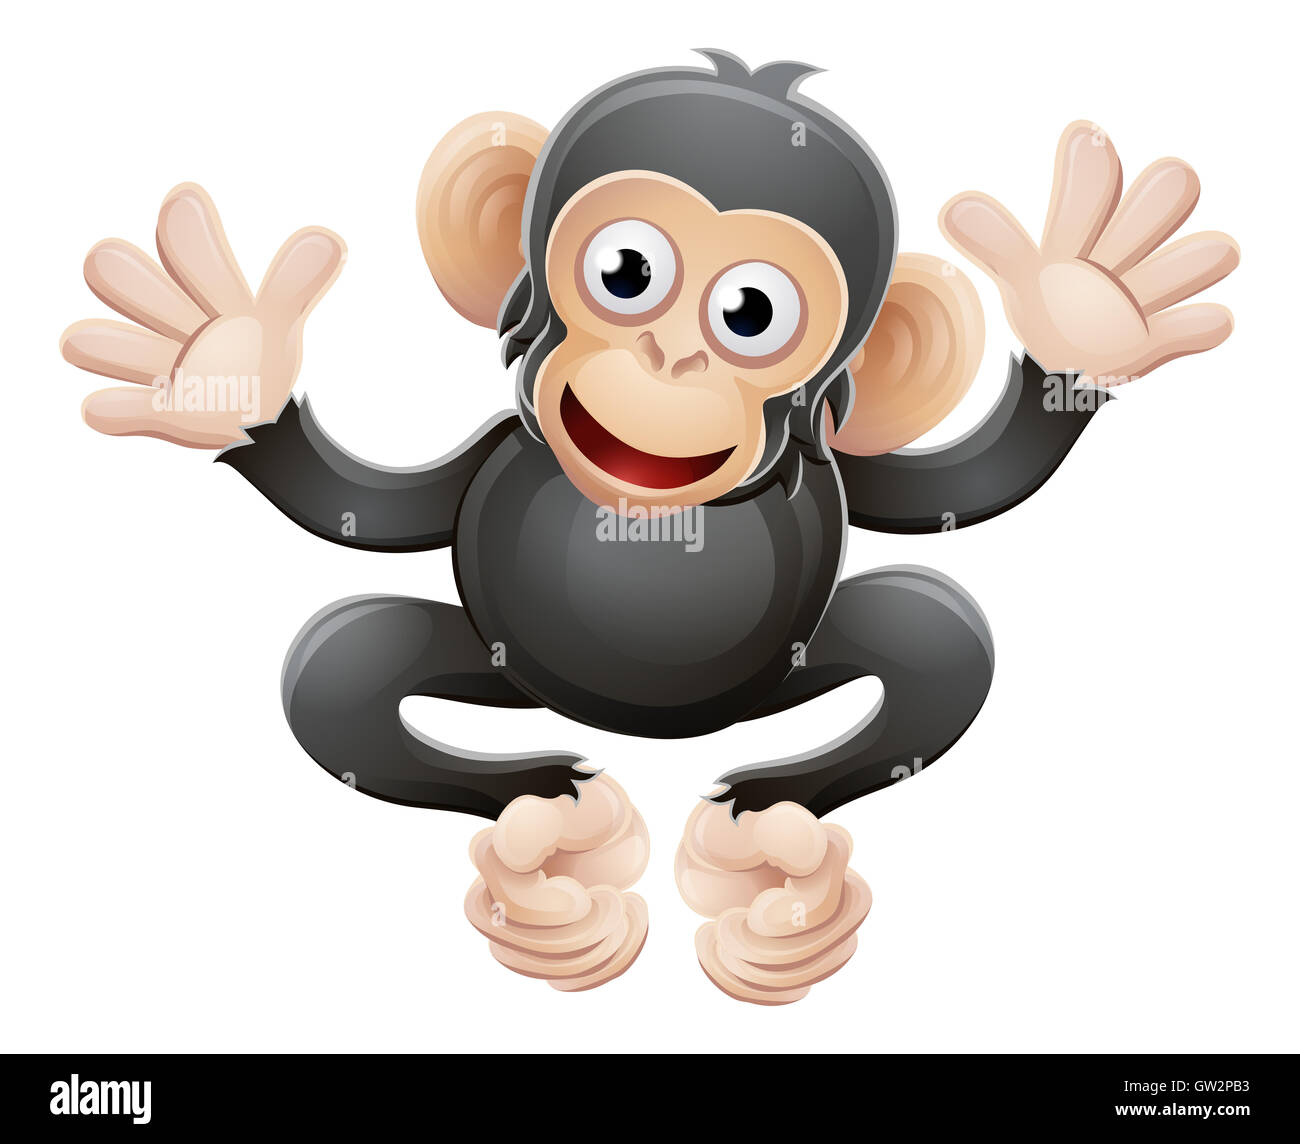 Un mignon petit chimpanzé chimpanzé ou un singe animal cartoon character mascot Banque D'Images